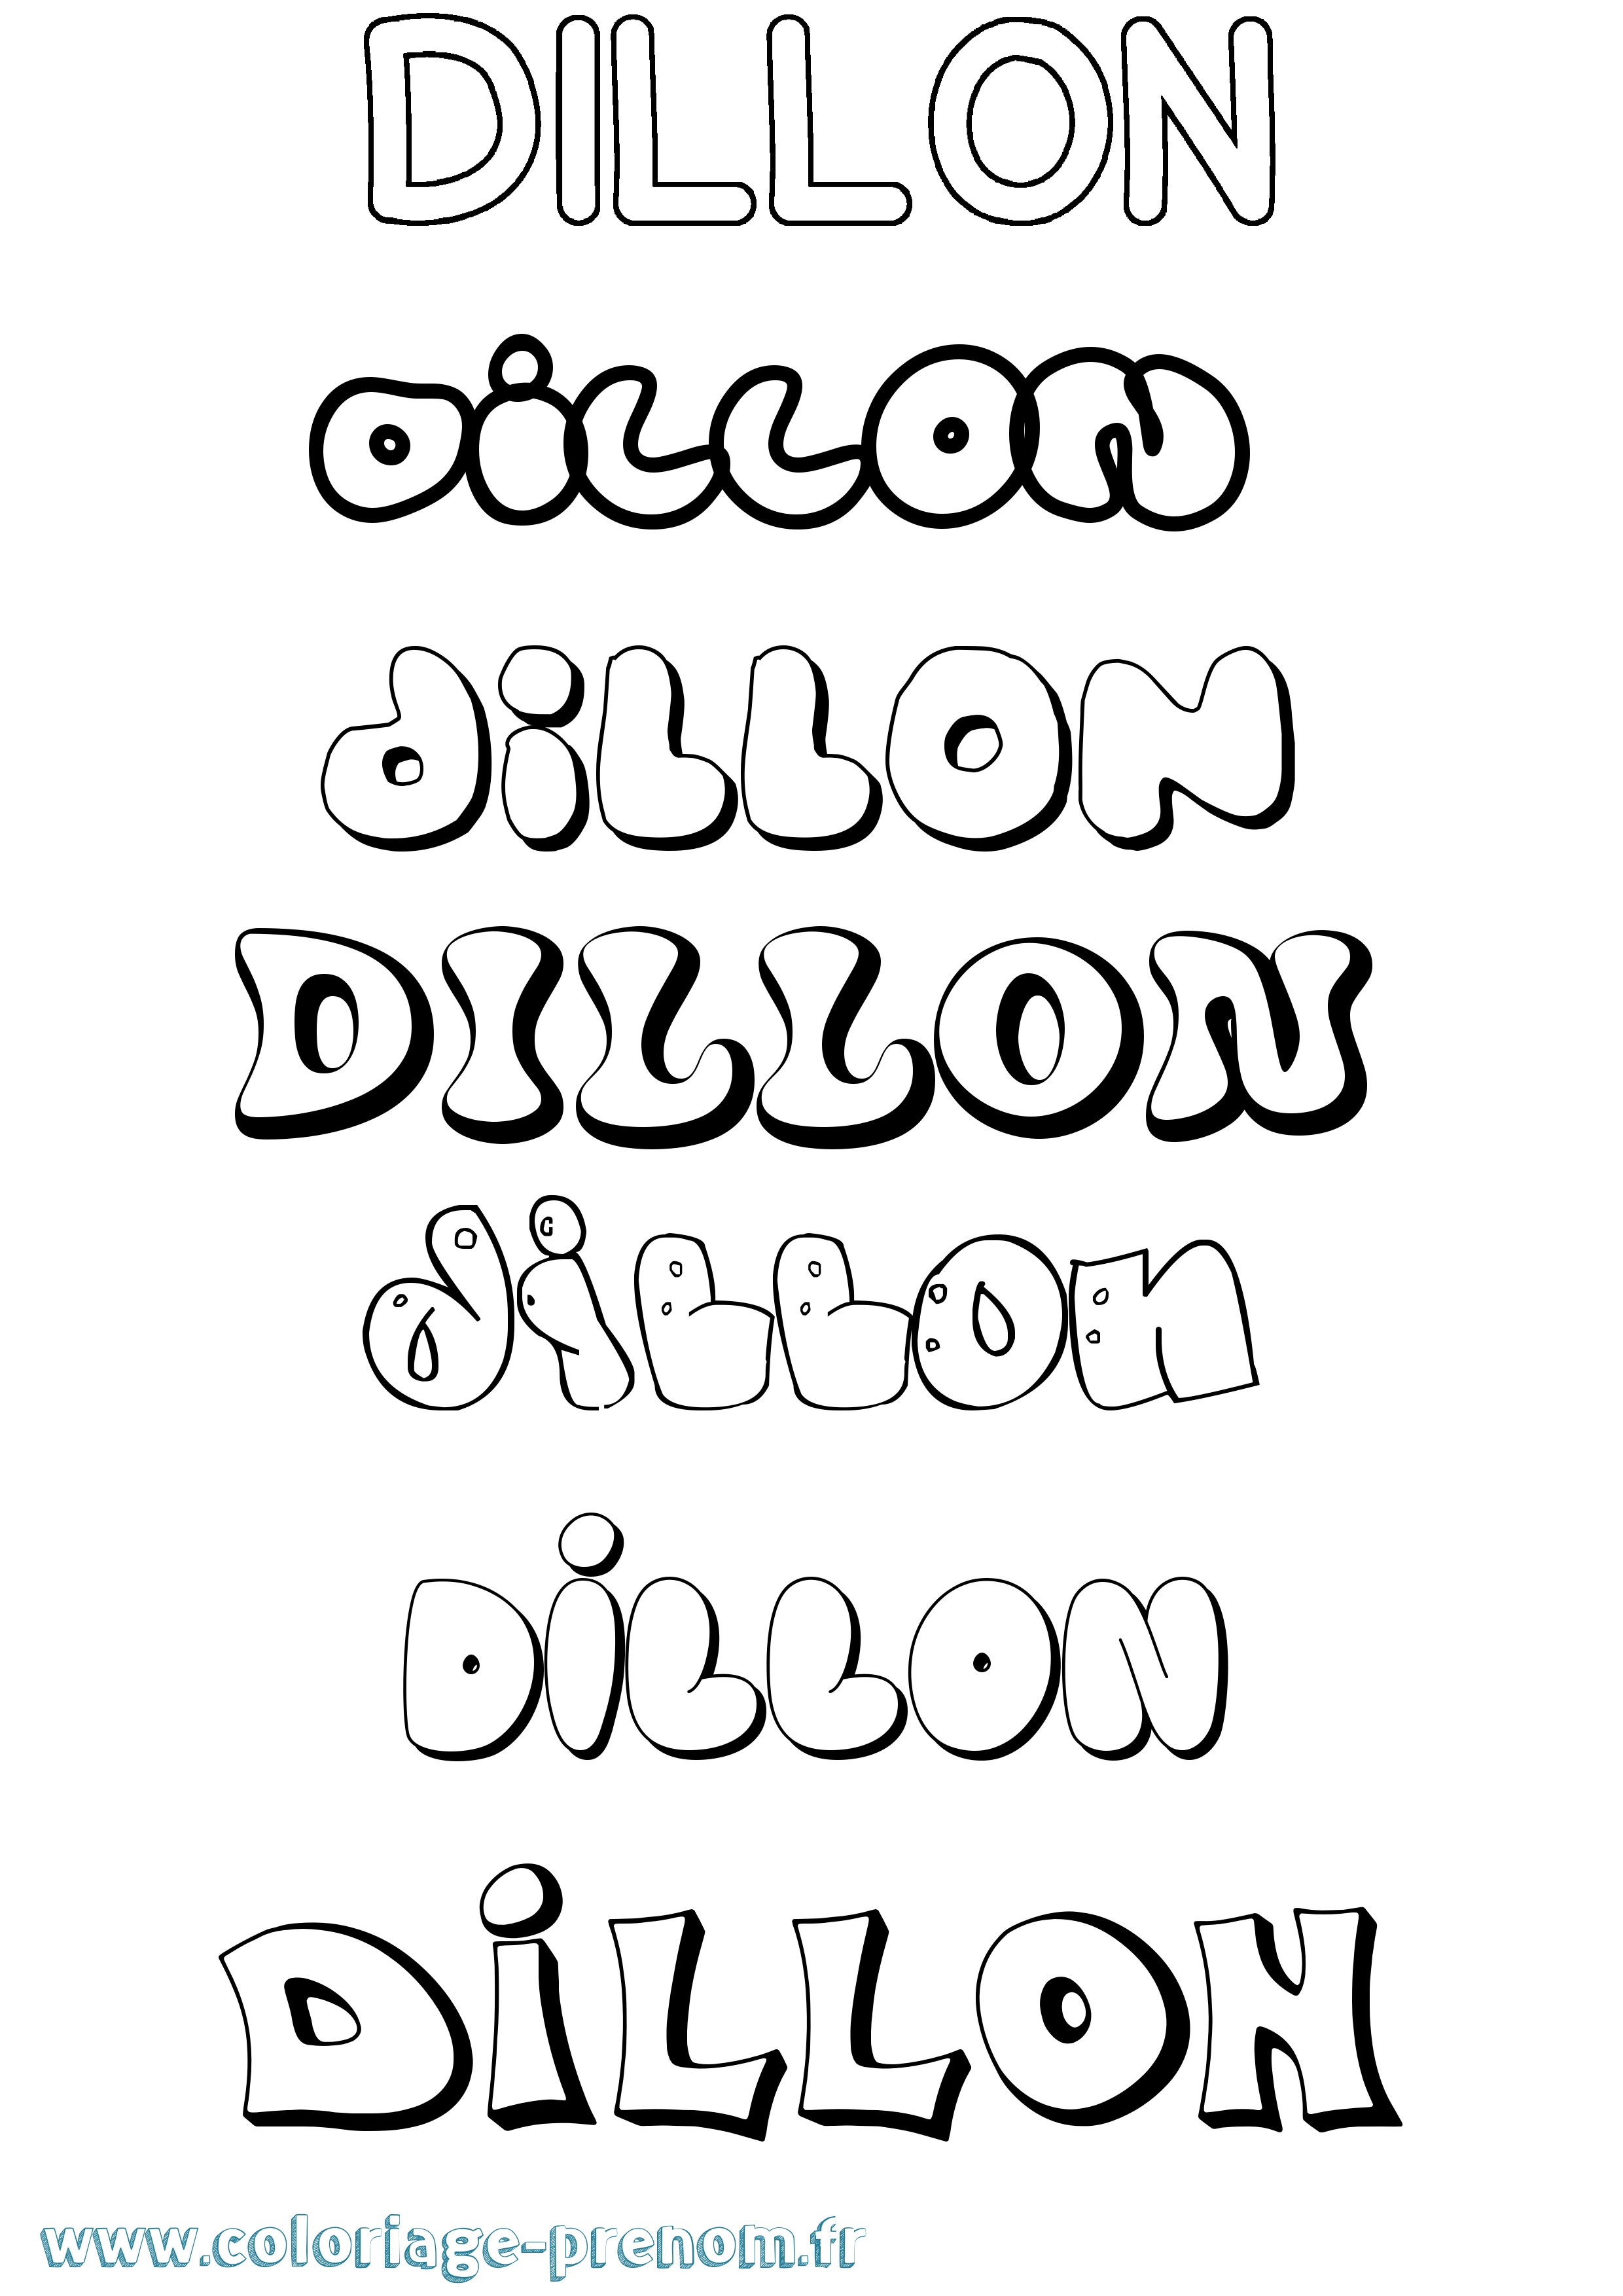 Coloriage prénom Dillon Bubble